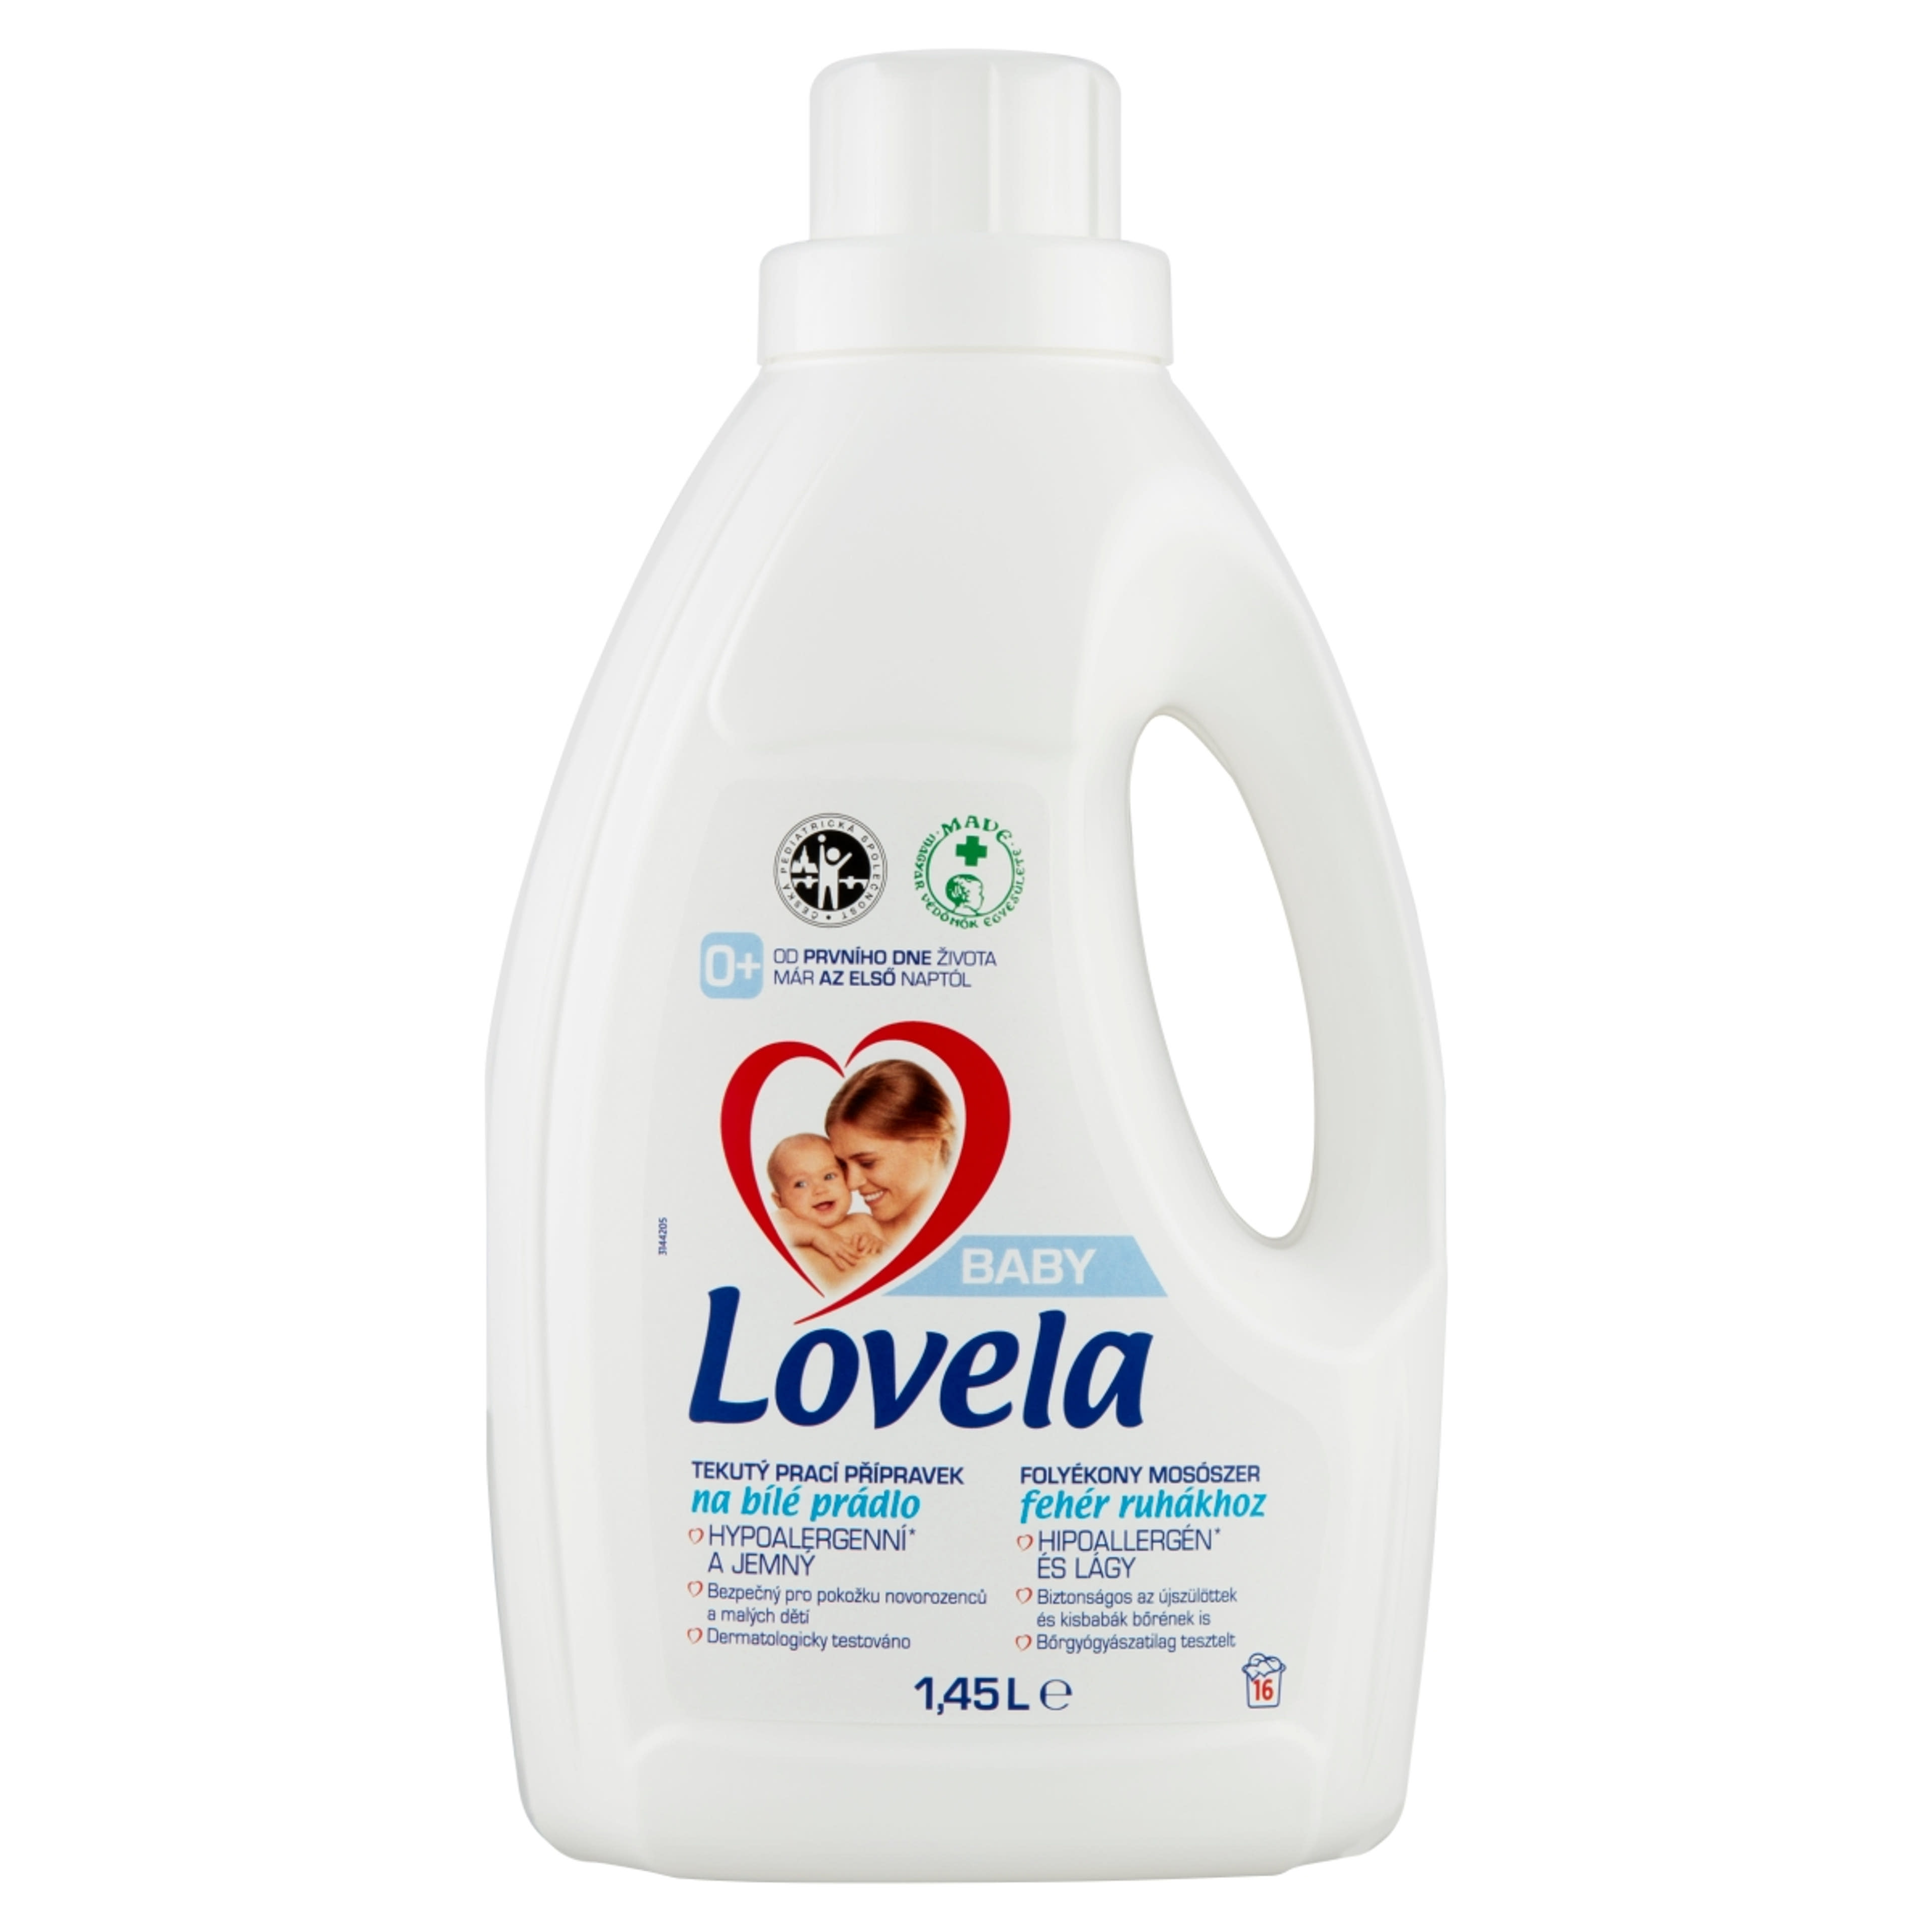 Lovela Baby folyékony mosószer fehér ruhákhoz - 1450 ml-1